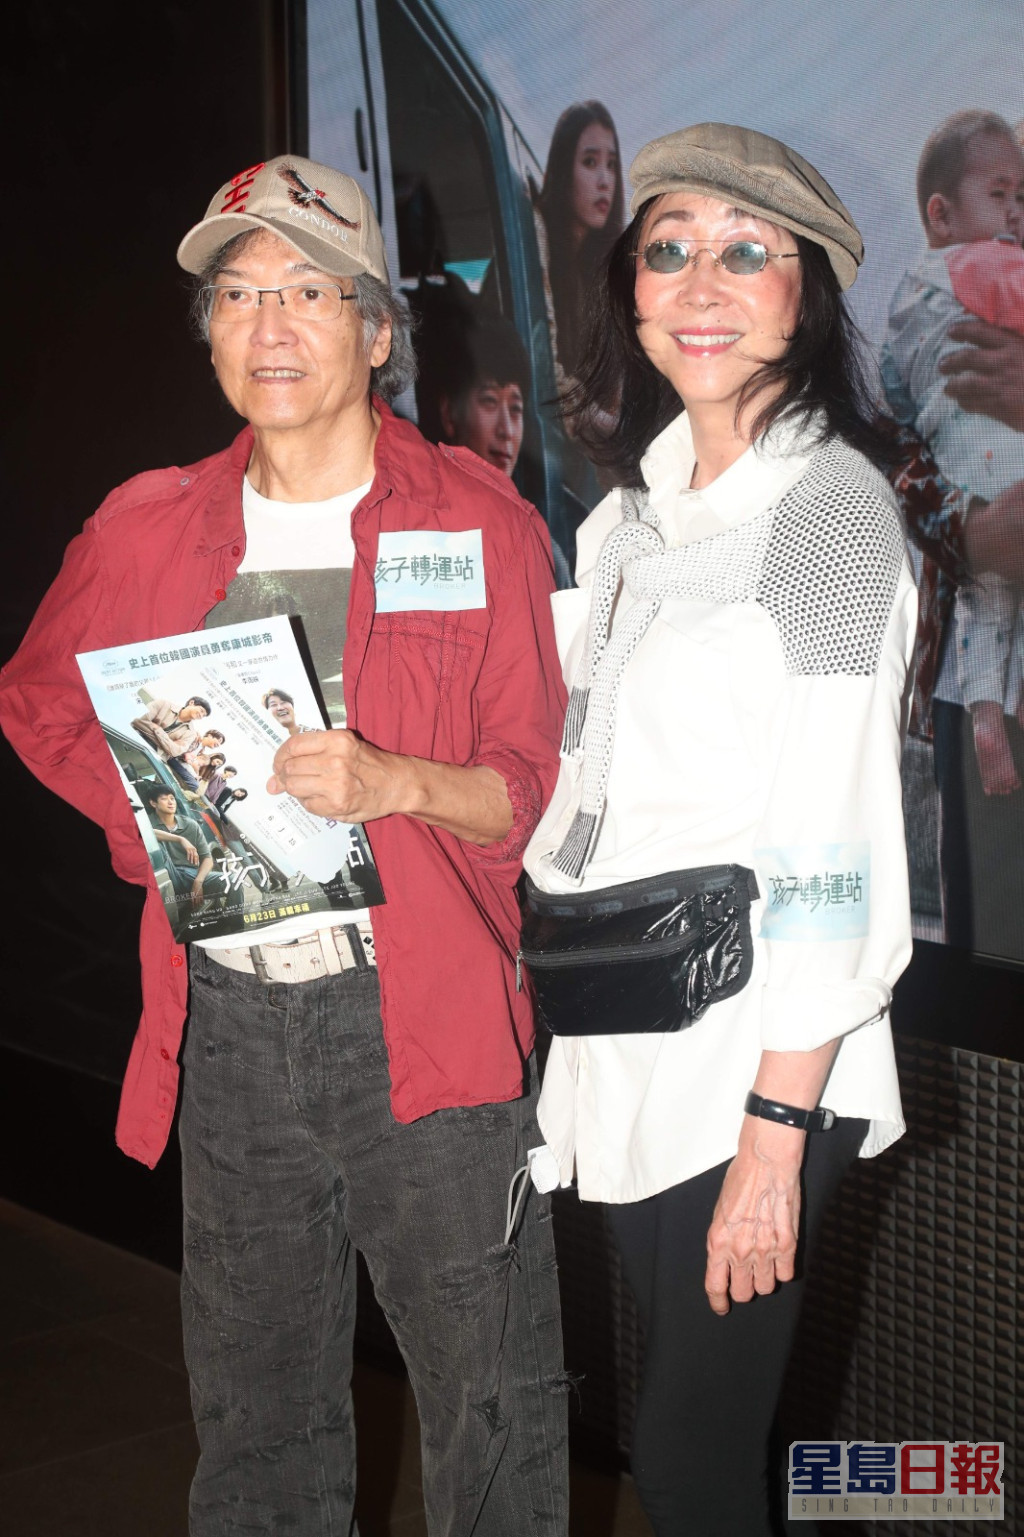 罗启锐在上月16日，与张婉婷拍拖到圆方戏院出席韩国电影《孩子转运站》首映礼。